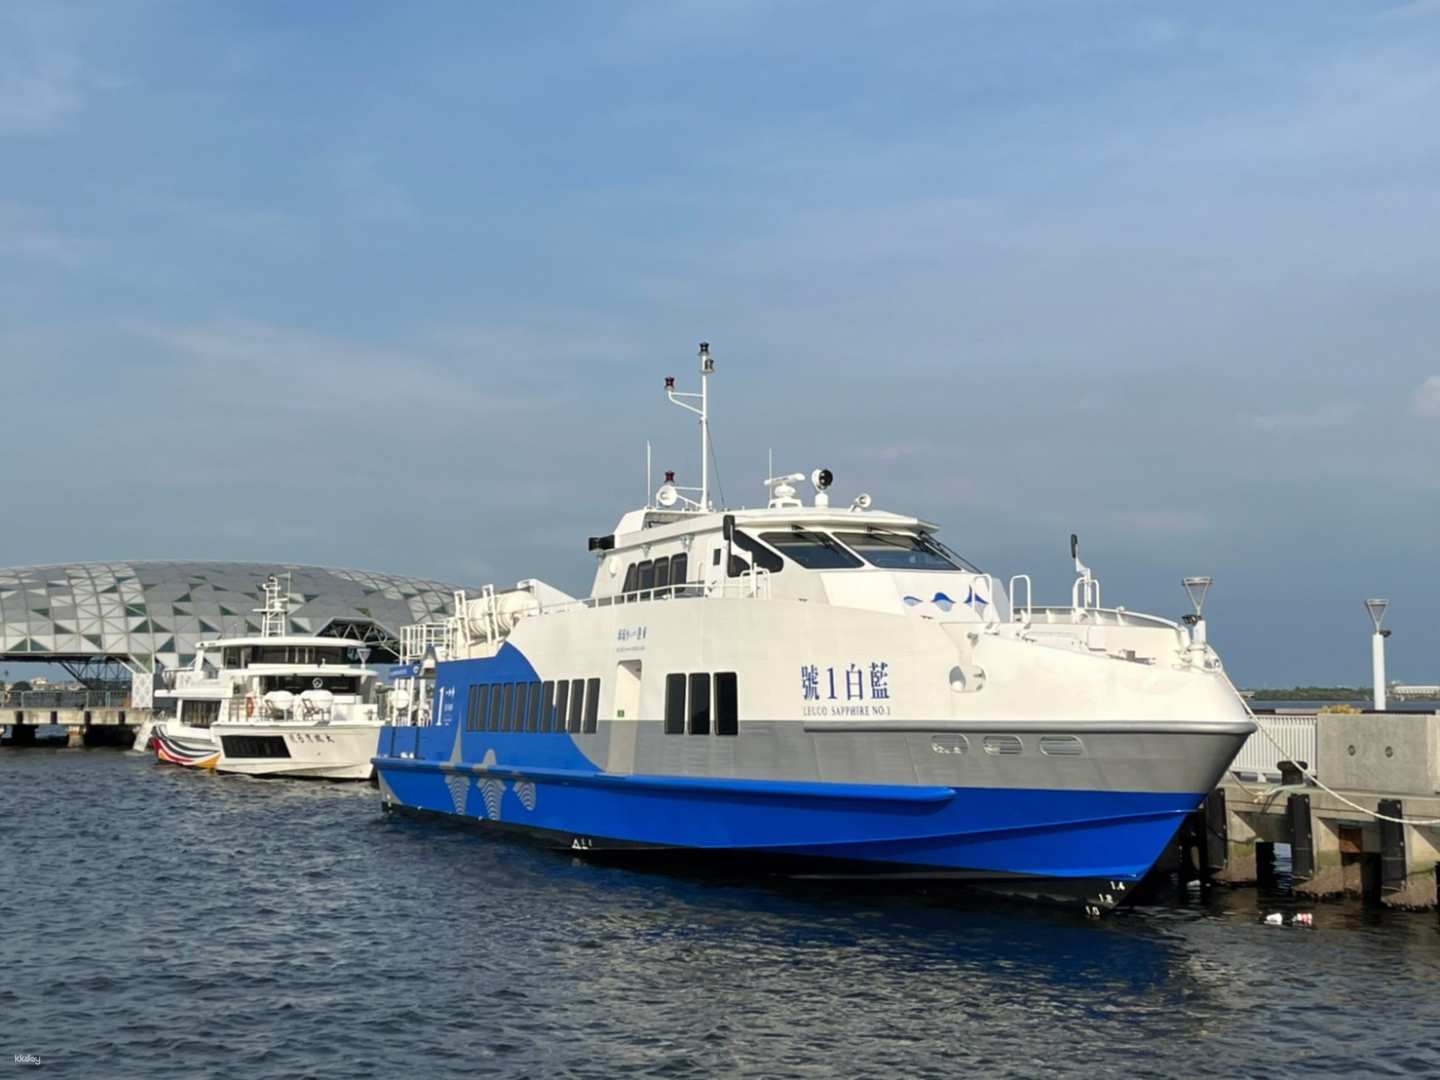 屏東,小琉球-藍白航線,屏東東港漁港/小琉球來回船票| 不需換票